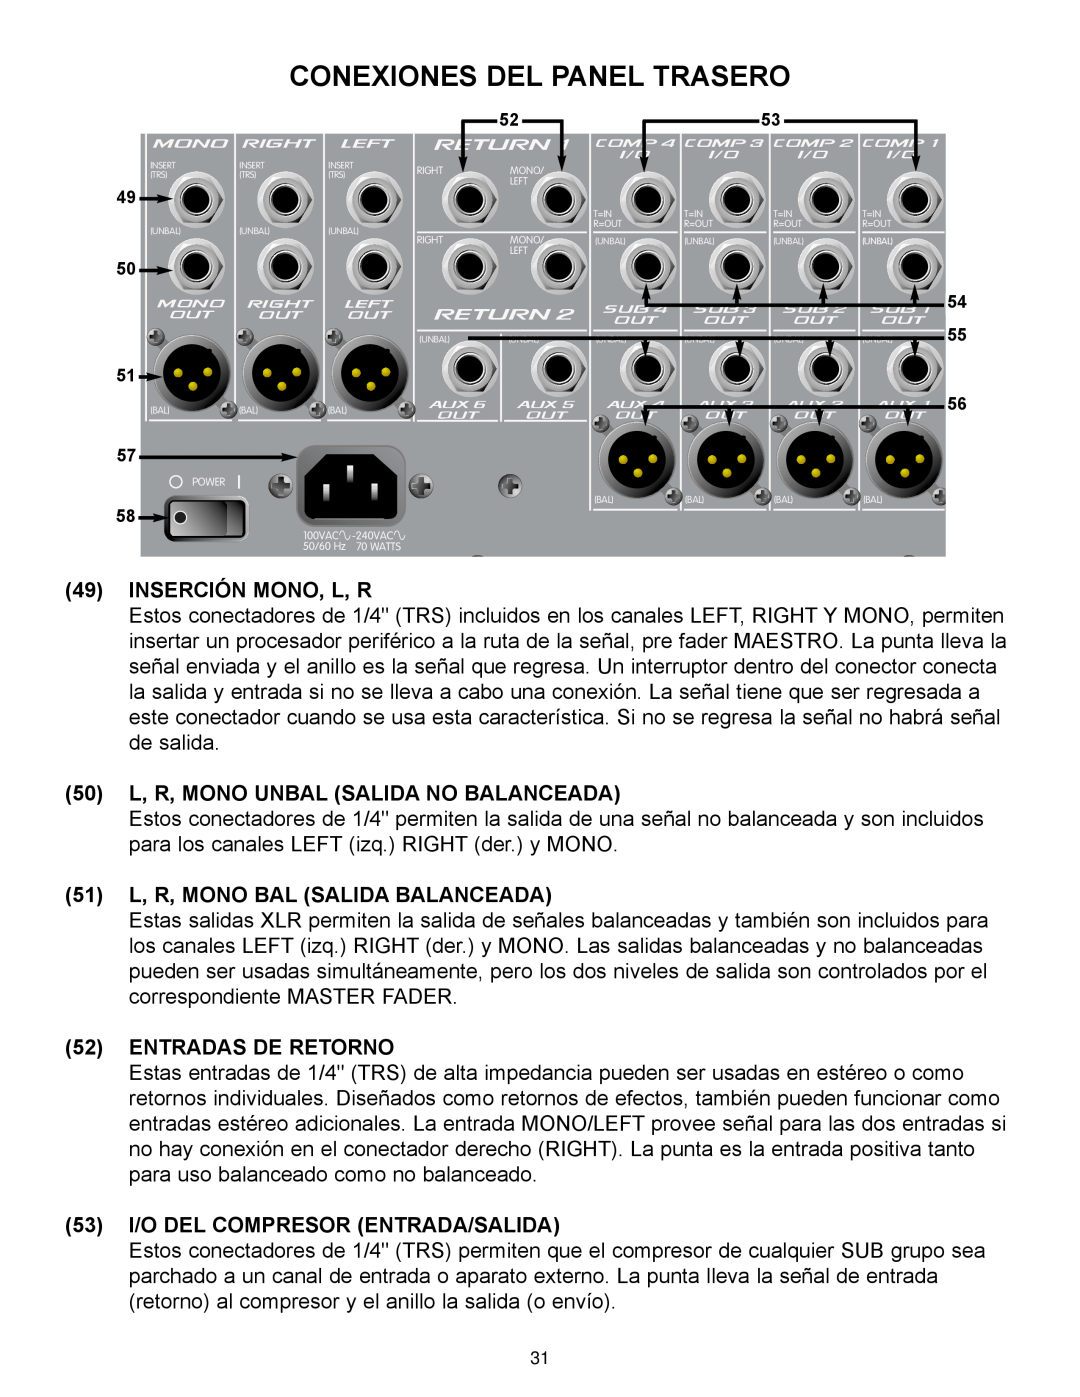 Peavey RQ 4300 Series manual Conexiones Del Panel Trasero, Inserción Mono, L, R, 50 L, R, MONO UNBAL SALIDA NO BALANCEADA 